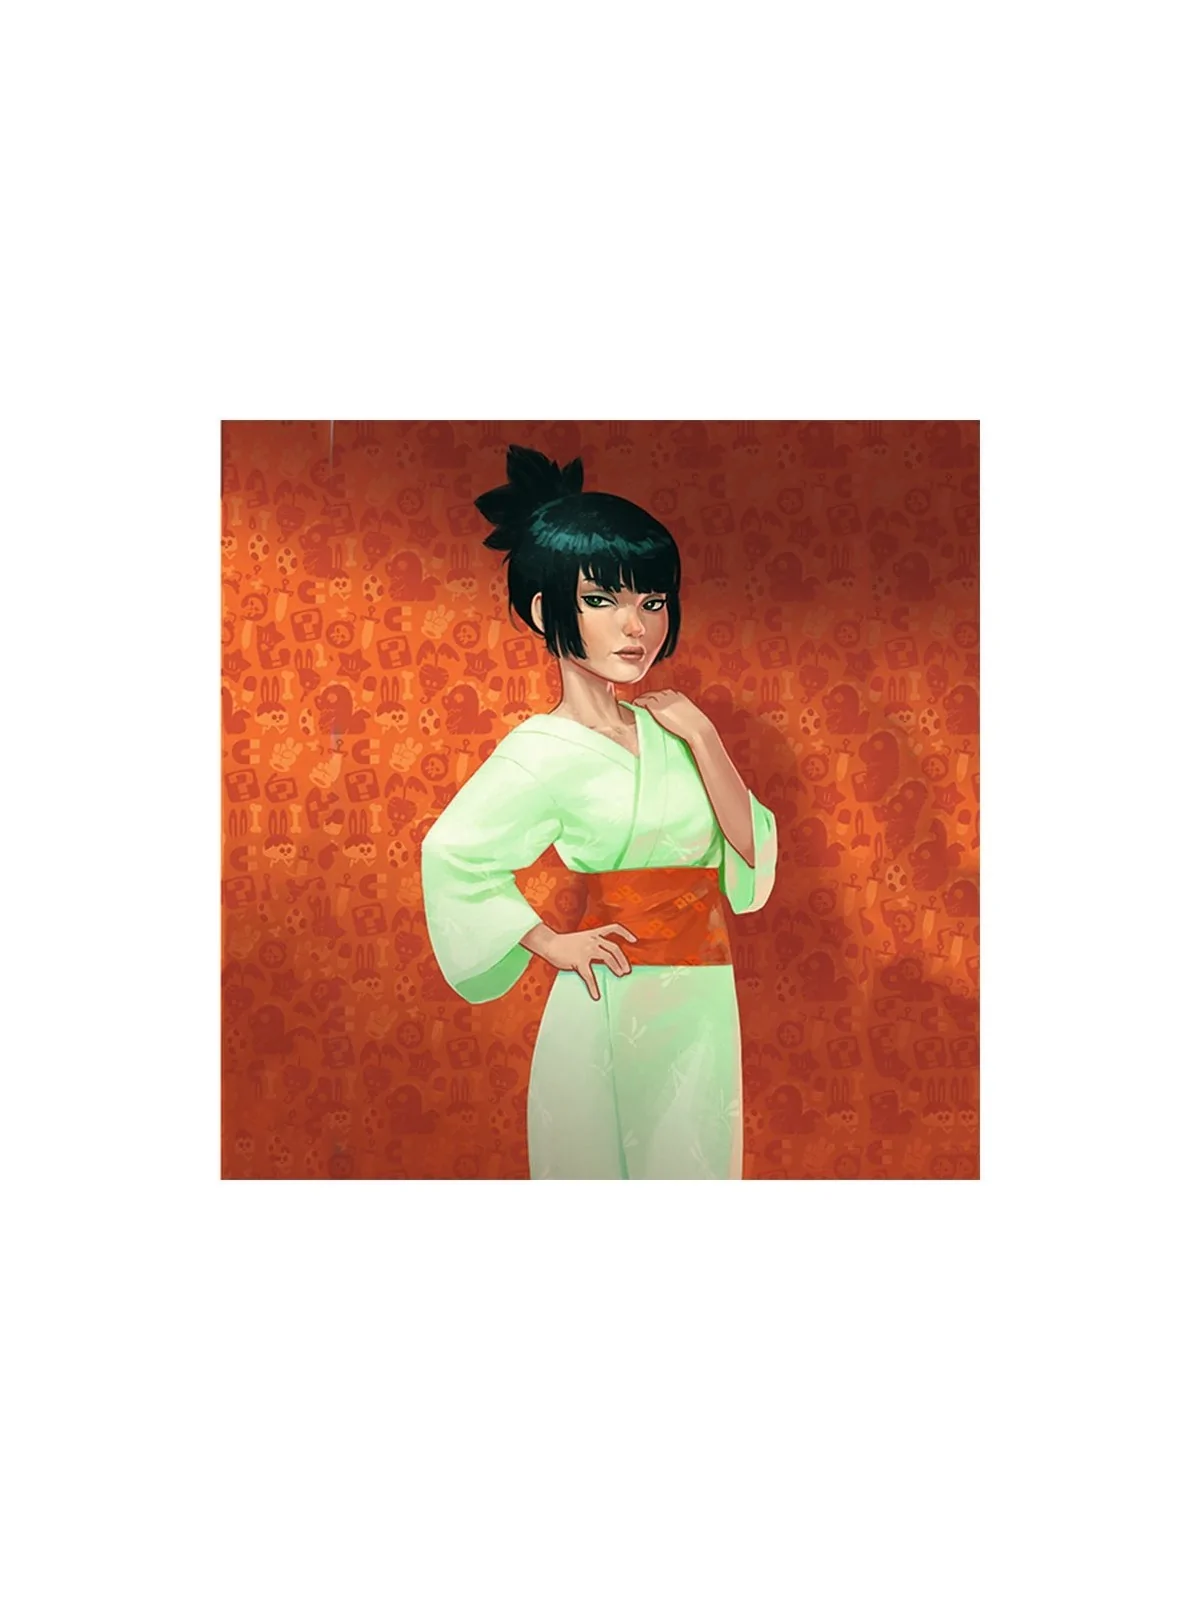 Comprar Kimono barato al mejor precio 17,96 € de SD GAMES